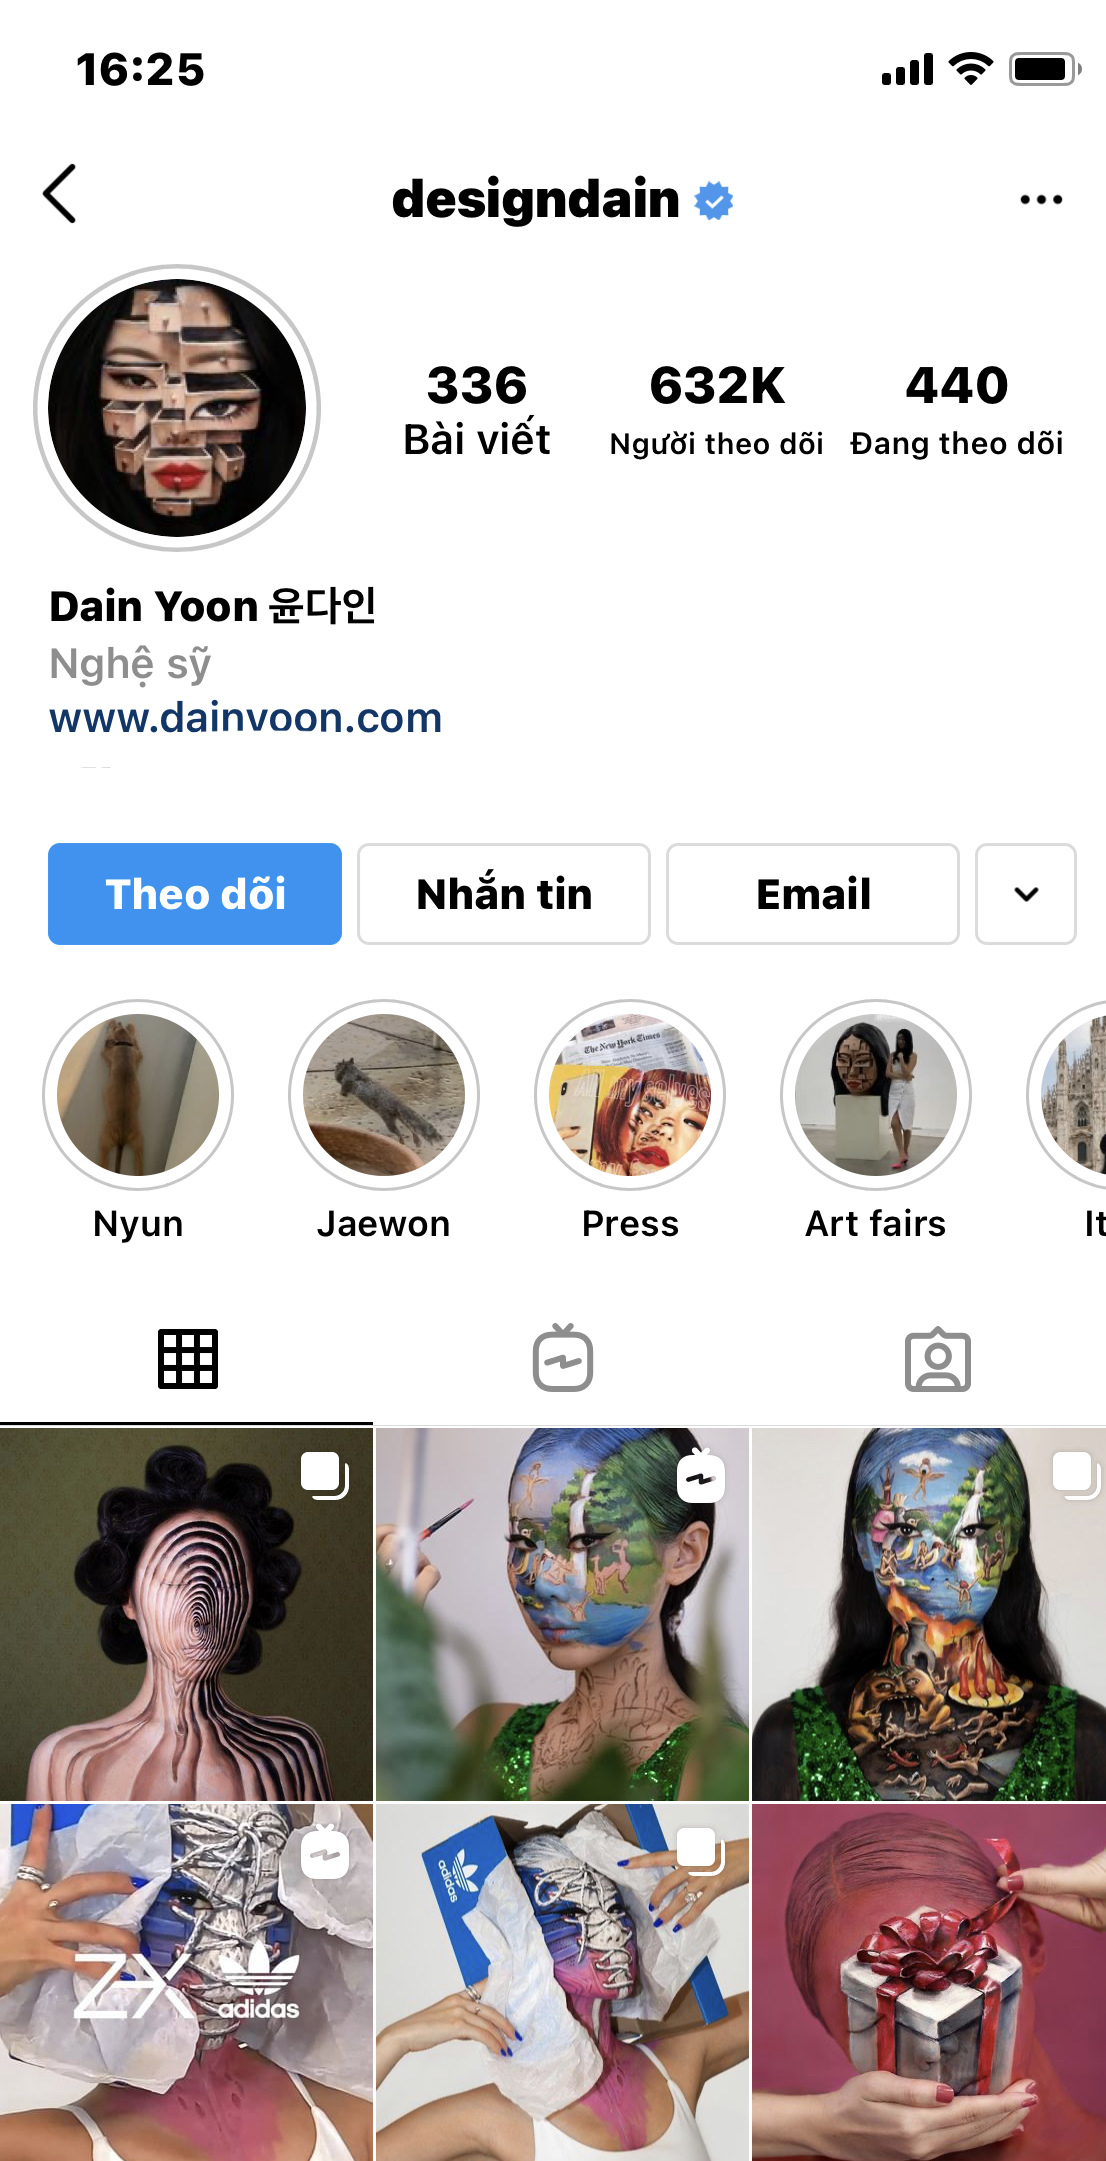 Trang cá nhân của Dain Yoon thu hút hơn 632.000 lượt theo dõi.